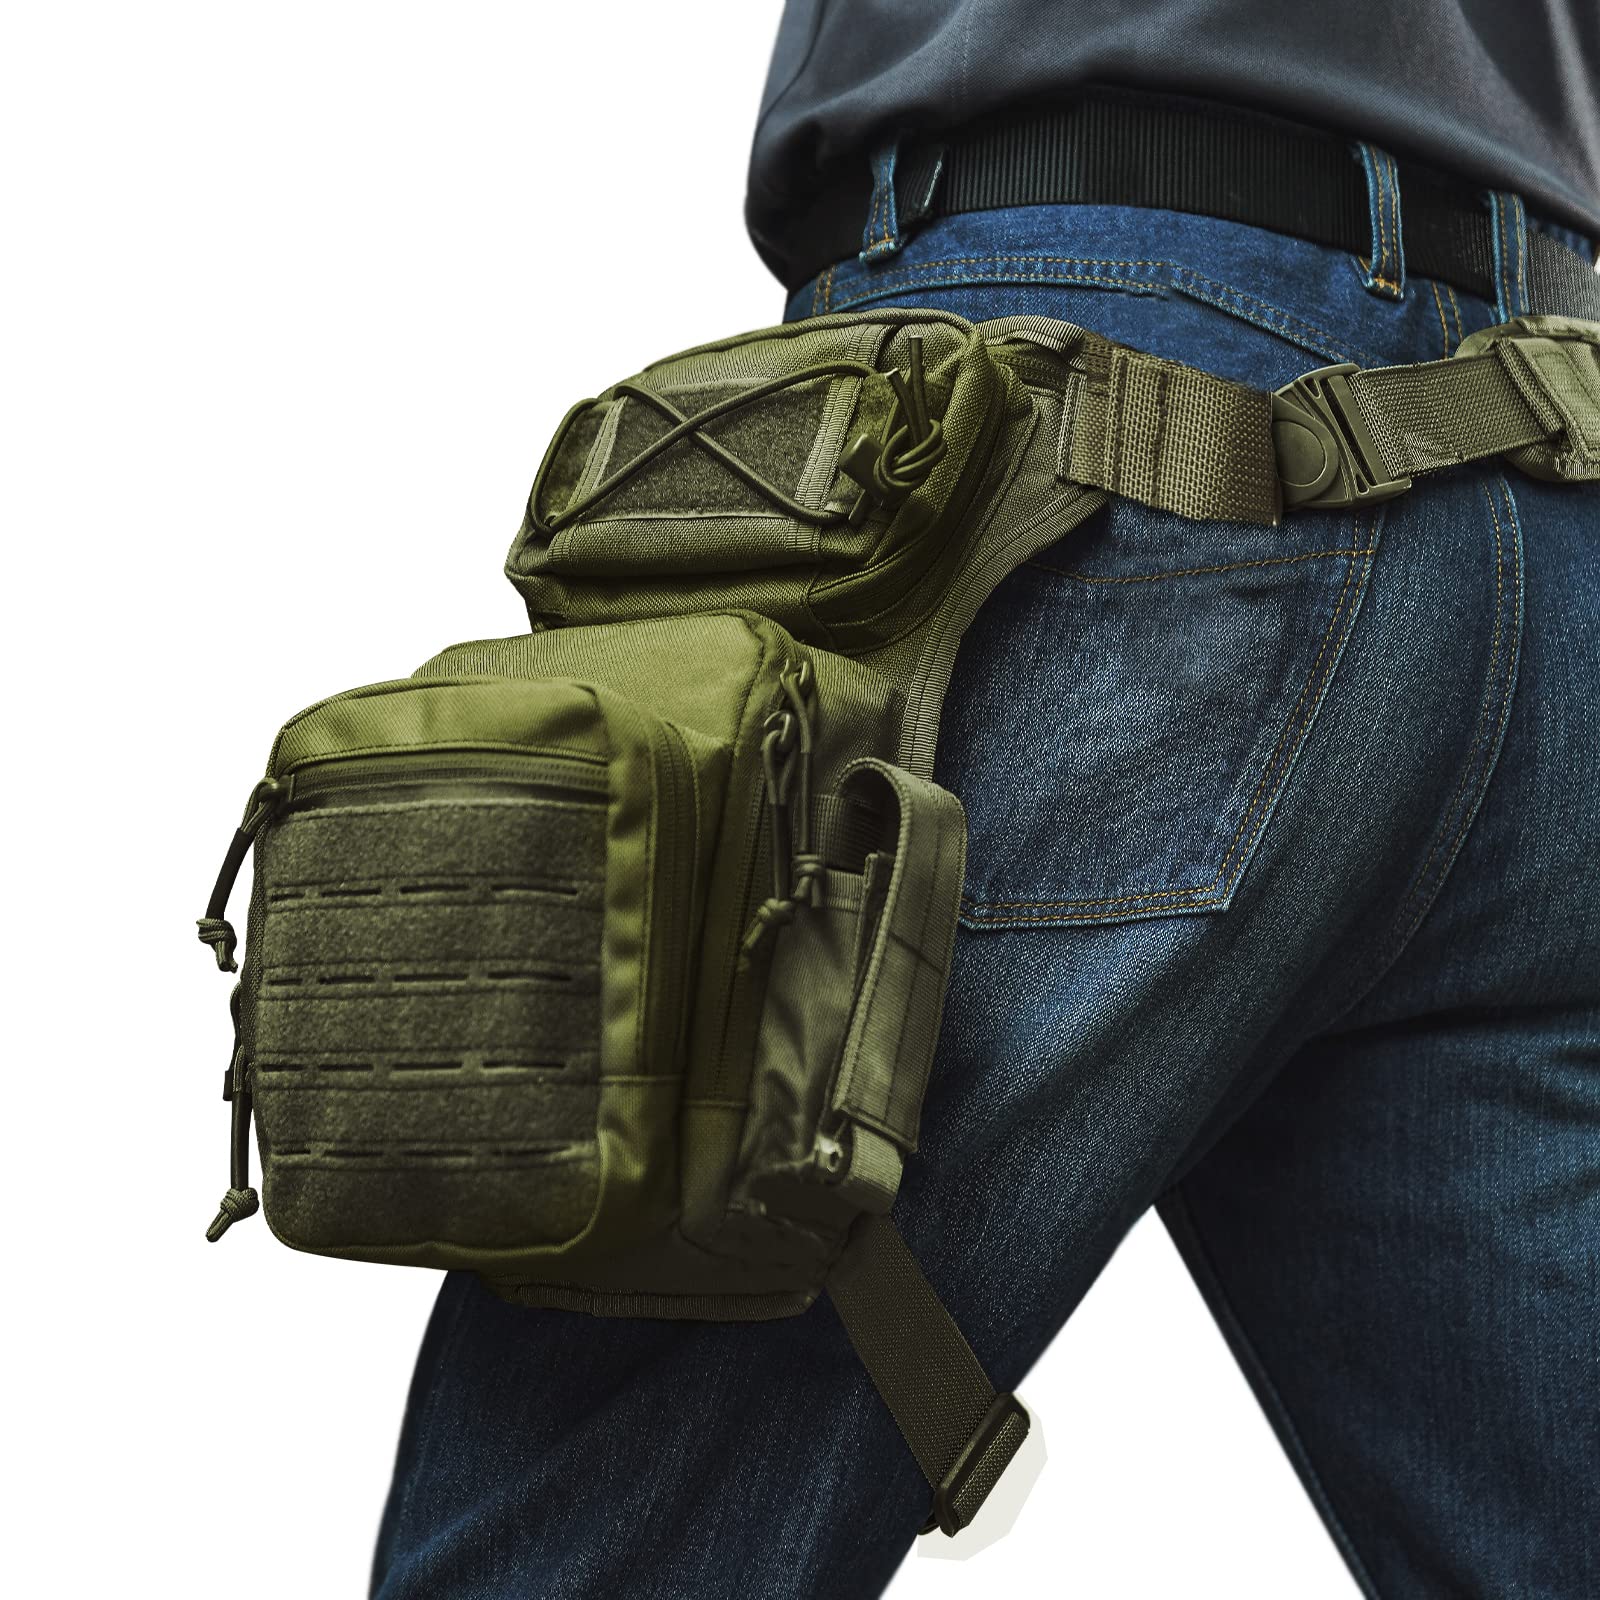 I-Multifunctional waterproof and durable Tactical Drop Leg Pouch Bag yamadoda nabasetyhini